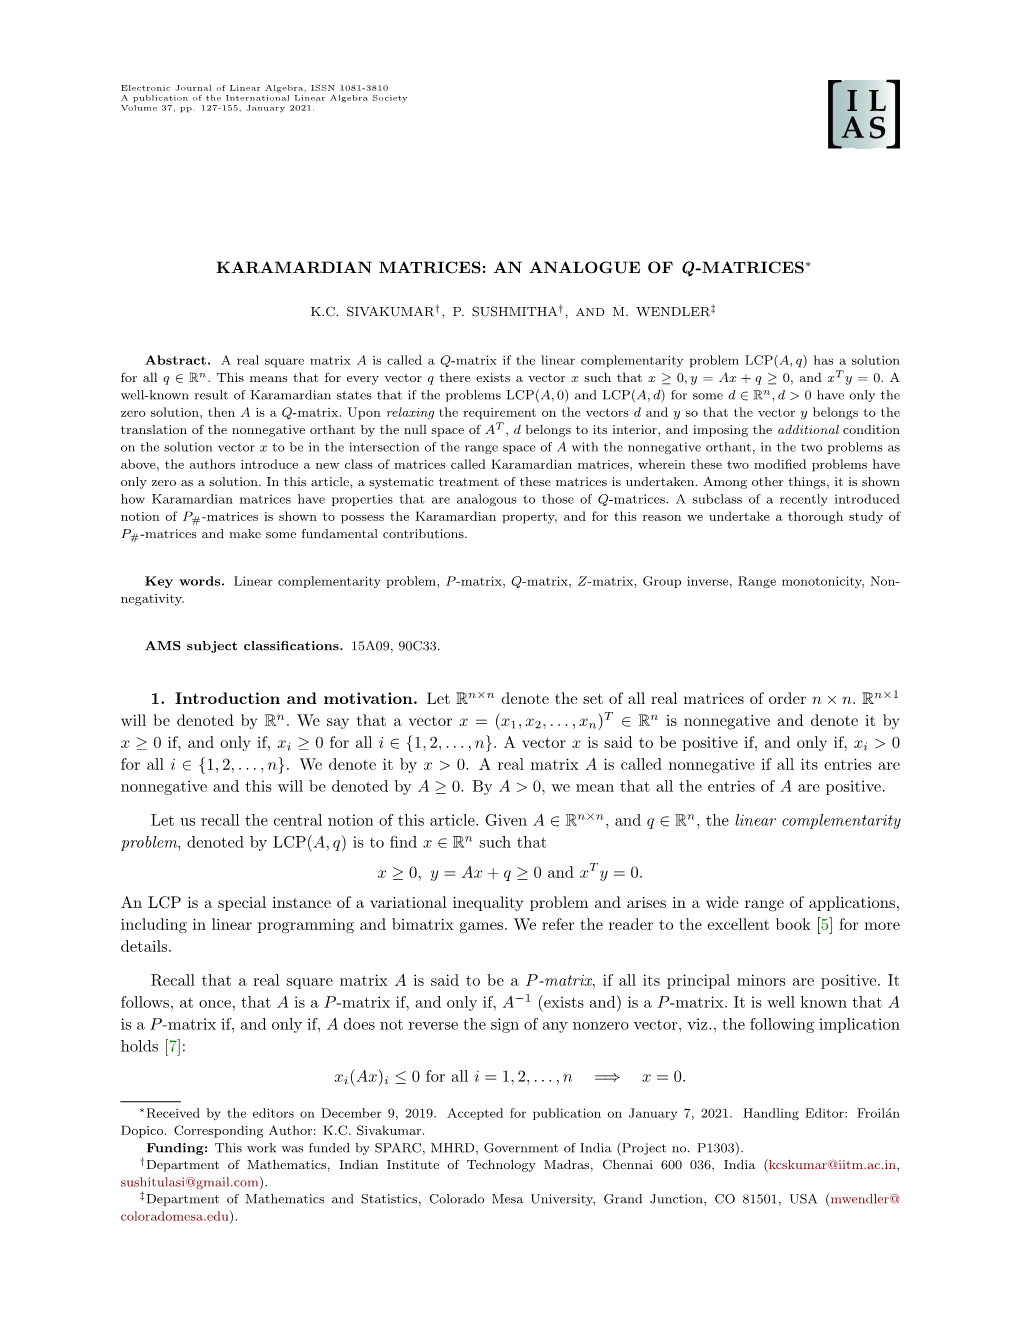 Karamardian Matrices: an Analogue of Q-Matrices∗